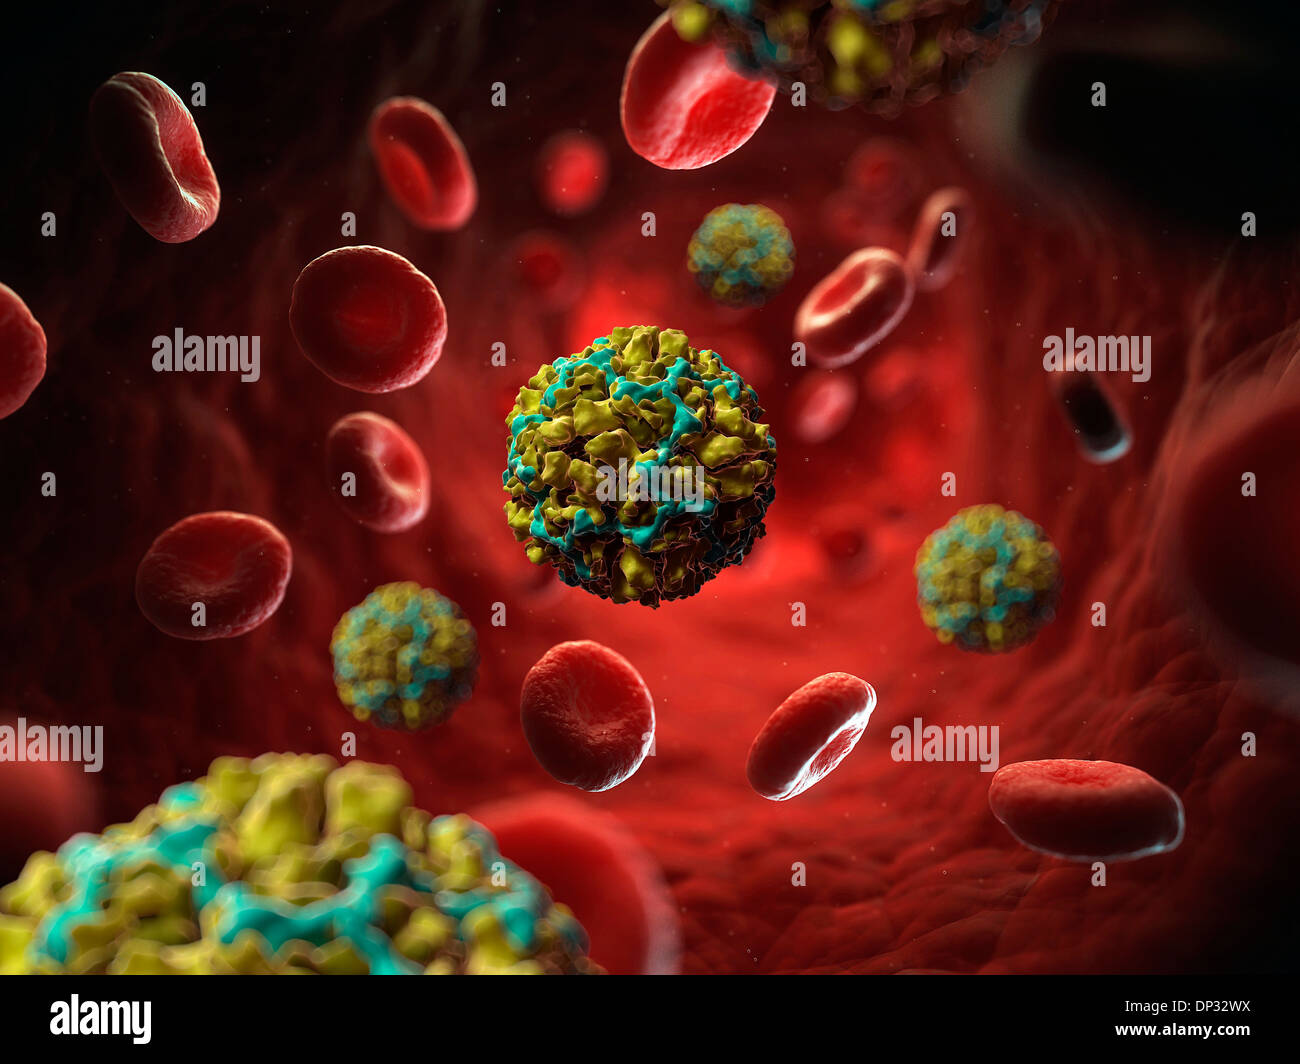 Human rhinovirus 14, artwork Stock Photo